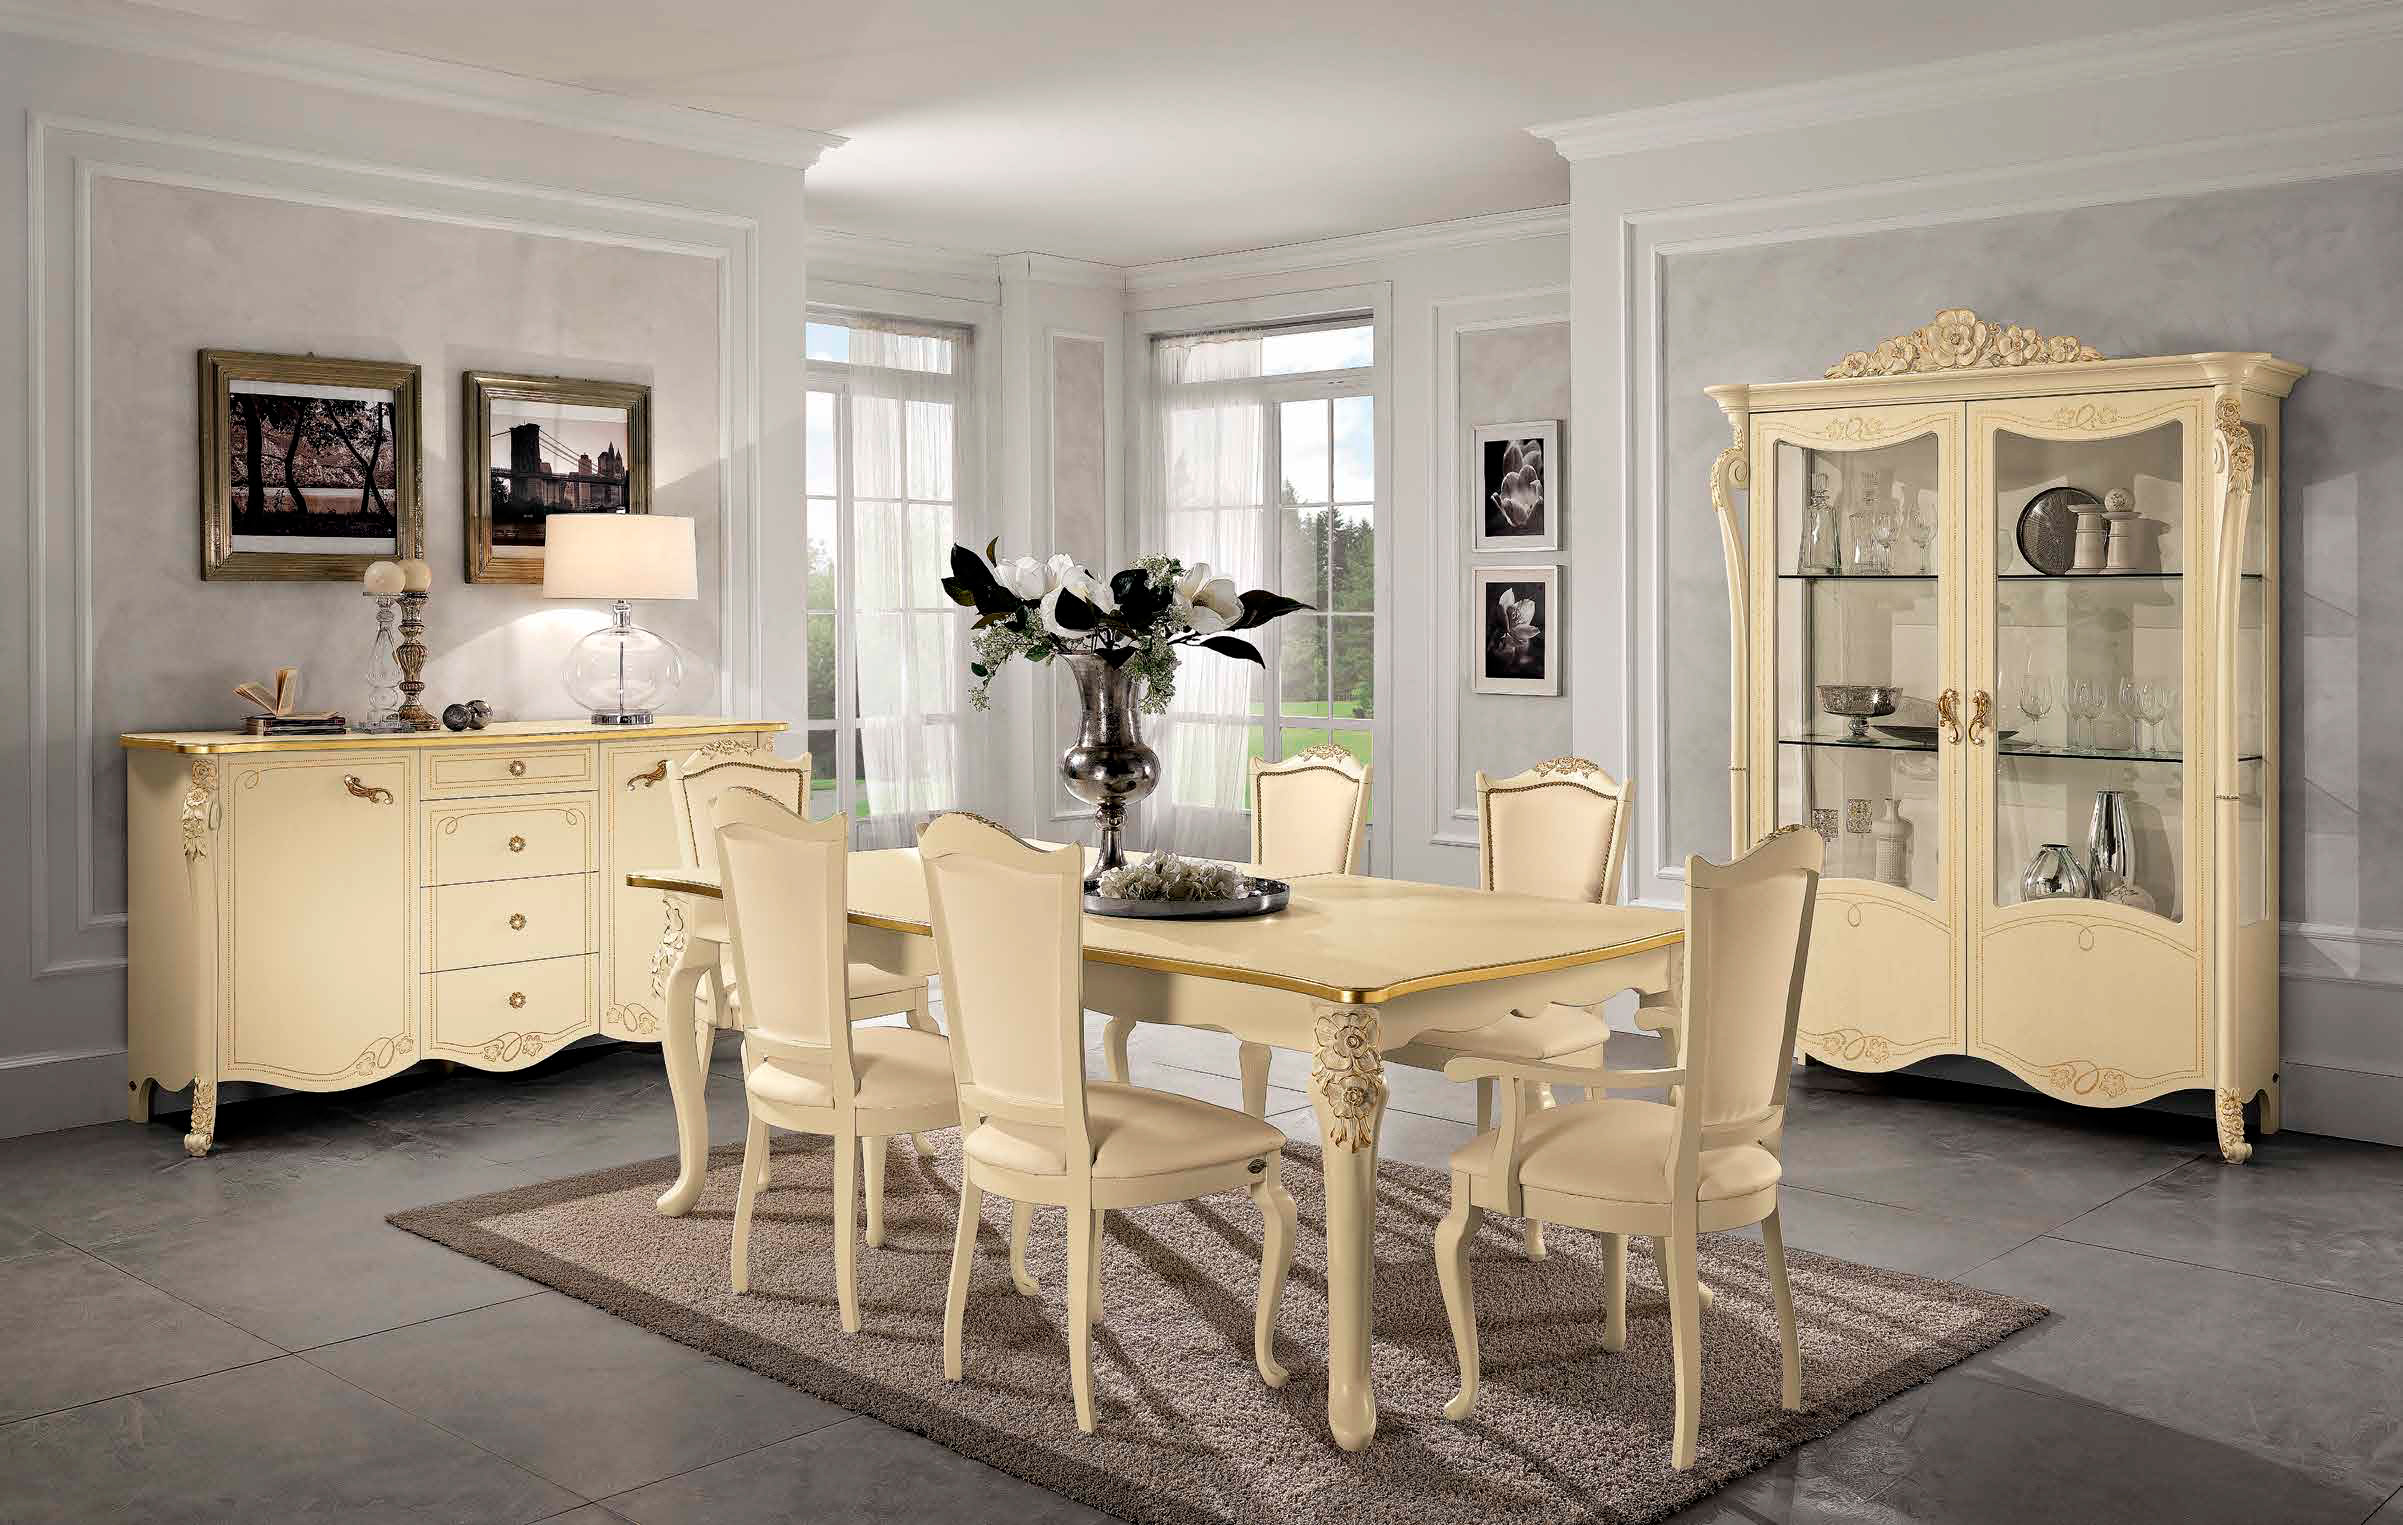 Новая коллекция мебели в столовую и гостиную комнаты от итальянской фабрики Mobil Piu - Viola, Viola Luxor